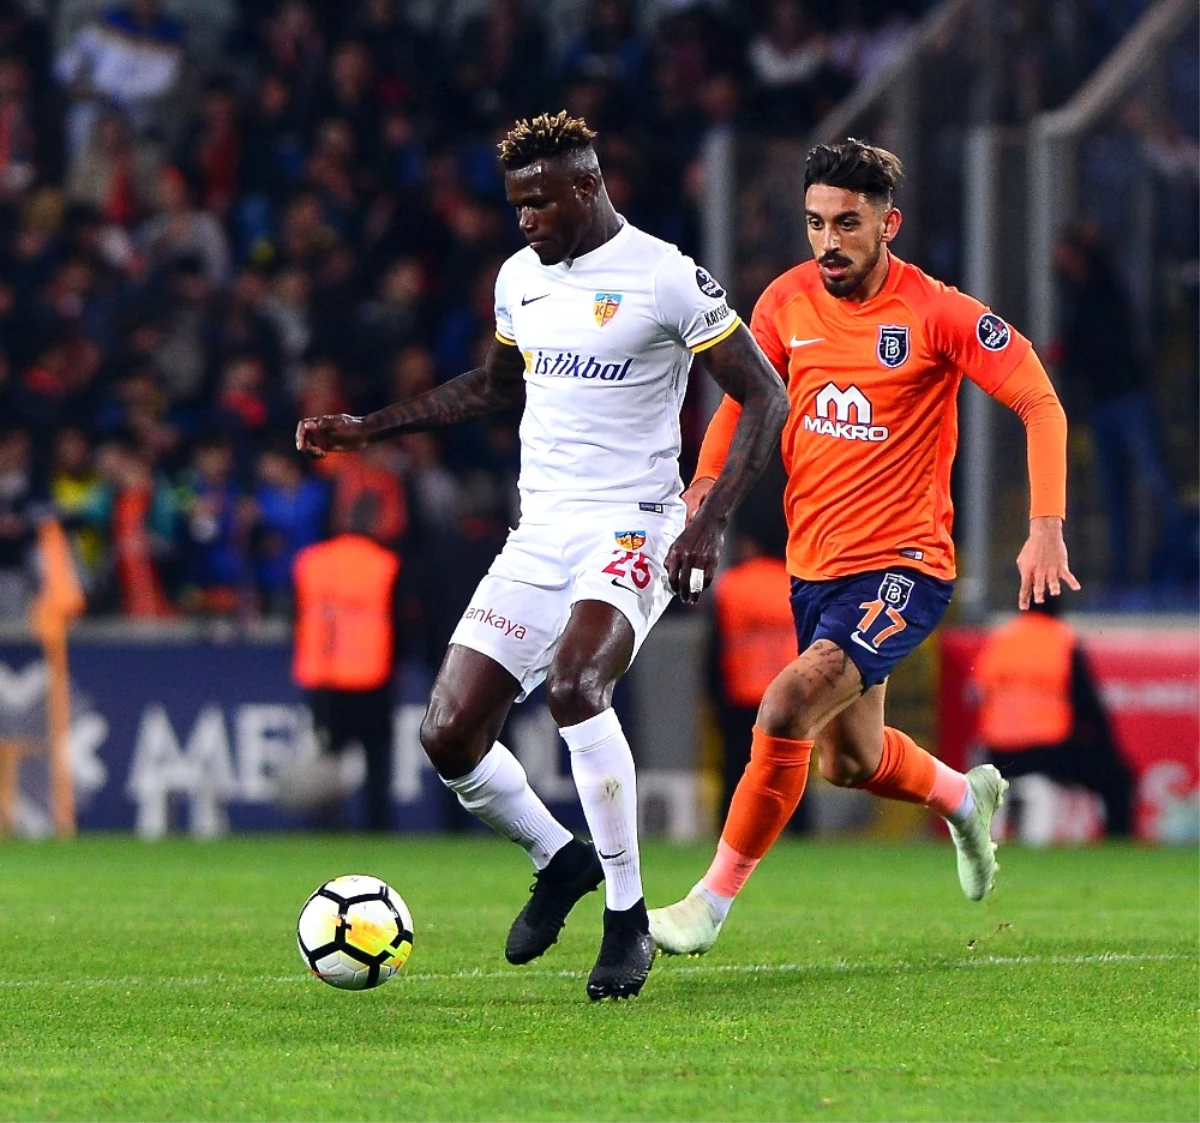 Spor Toto Süper Lig: Medipol Başakşehir: 3 - Kayserispor: 1 (Maç Sonucu)